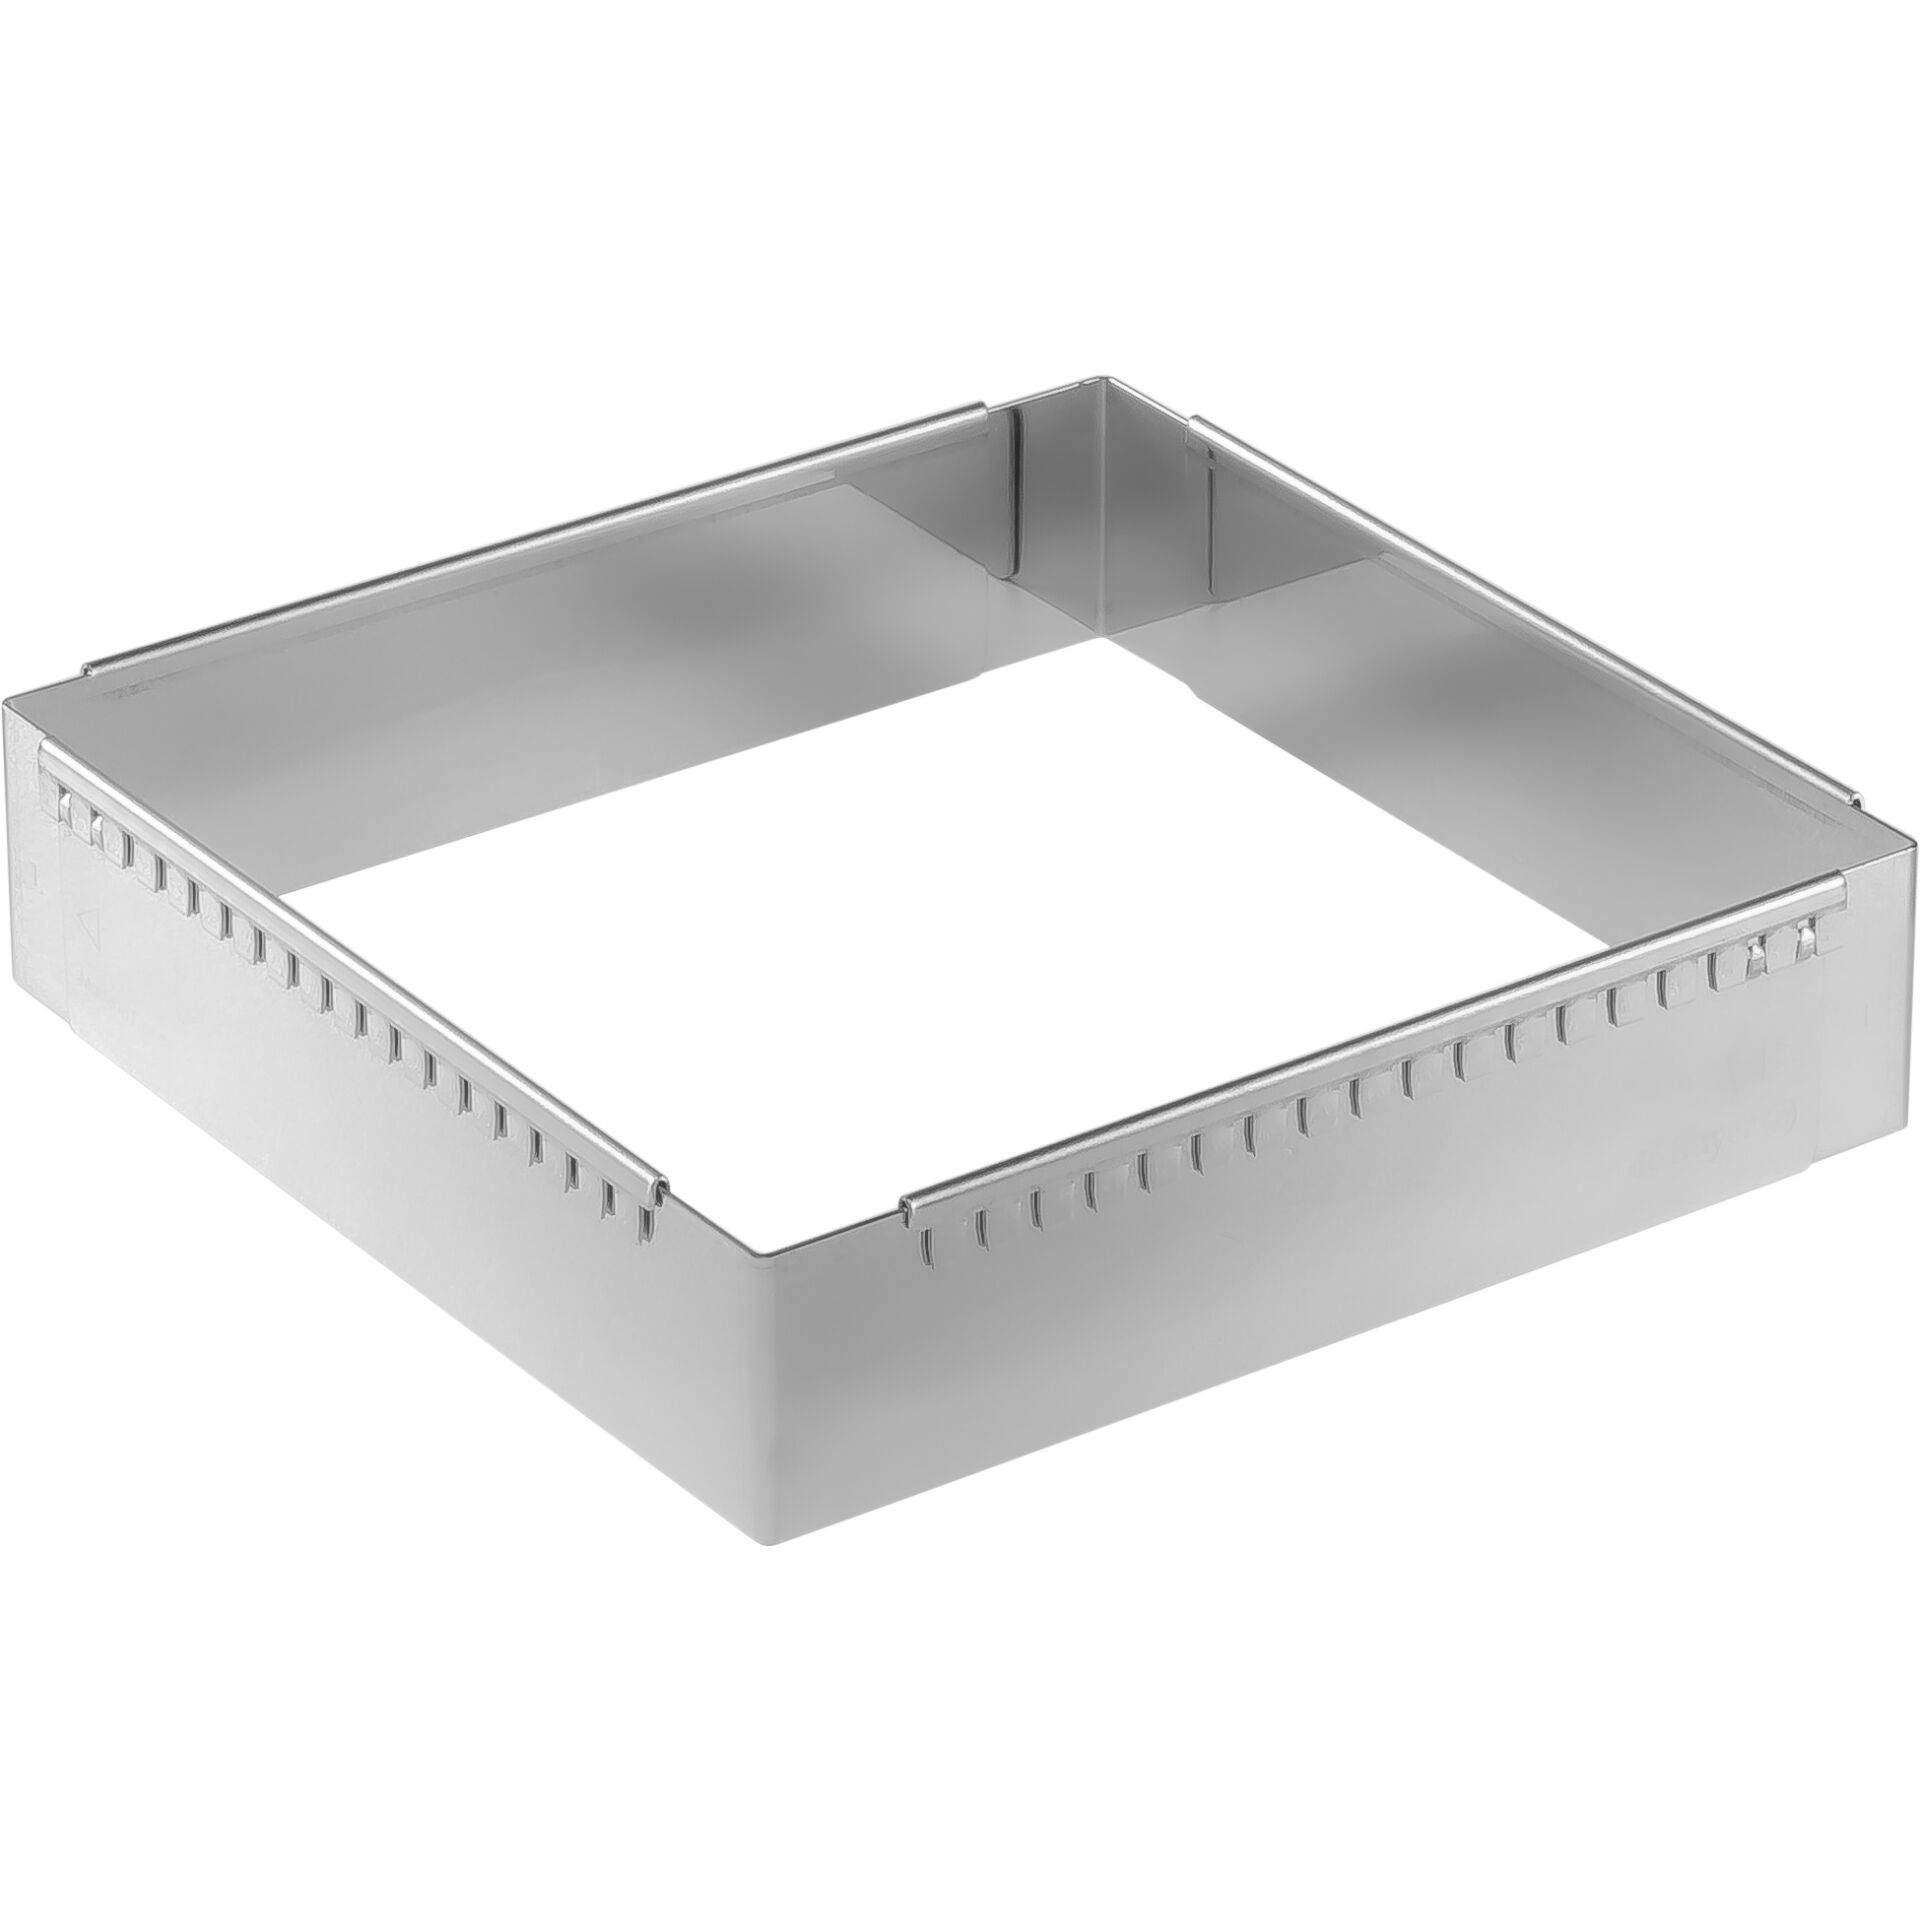 De Buyer Patisserie Frame steel adjustable 20-37 cm square